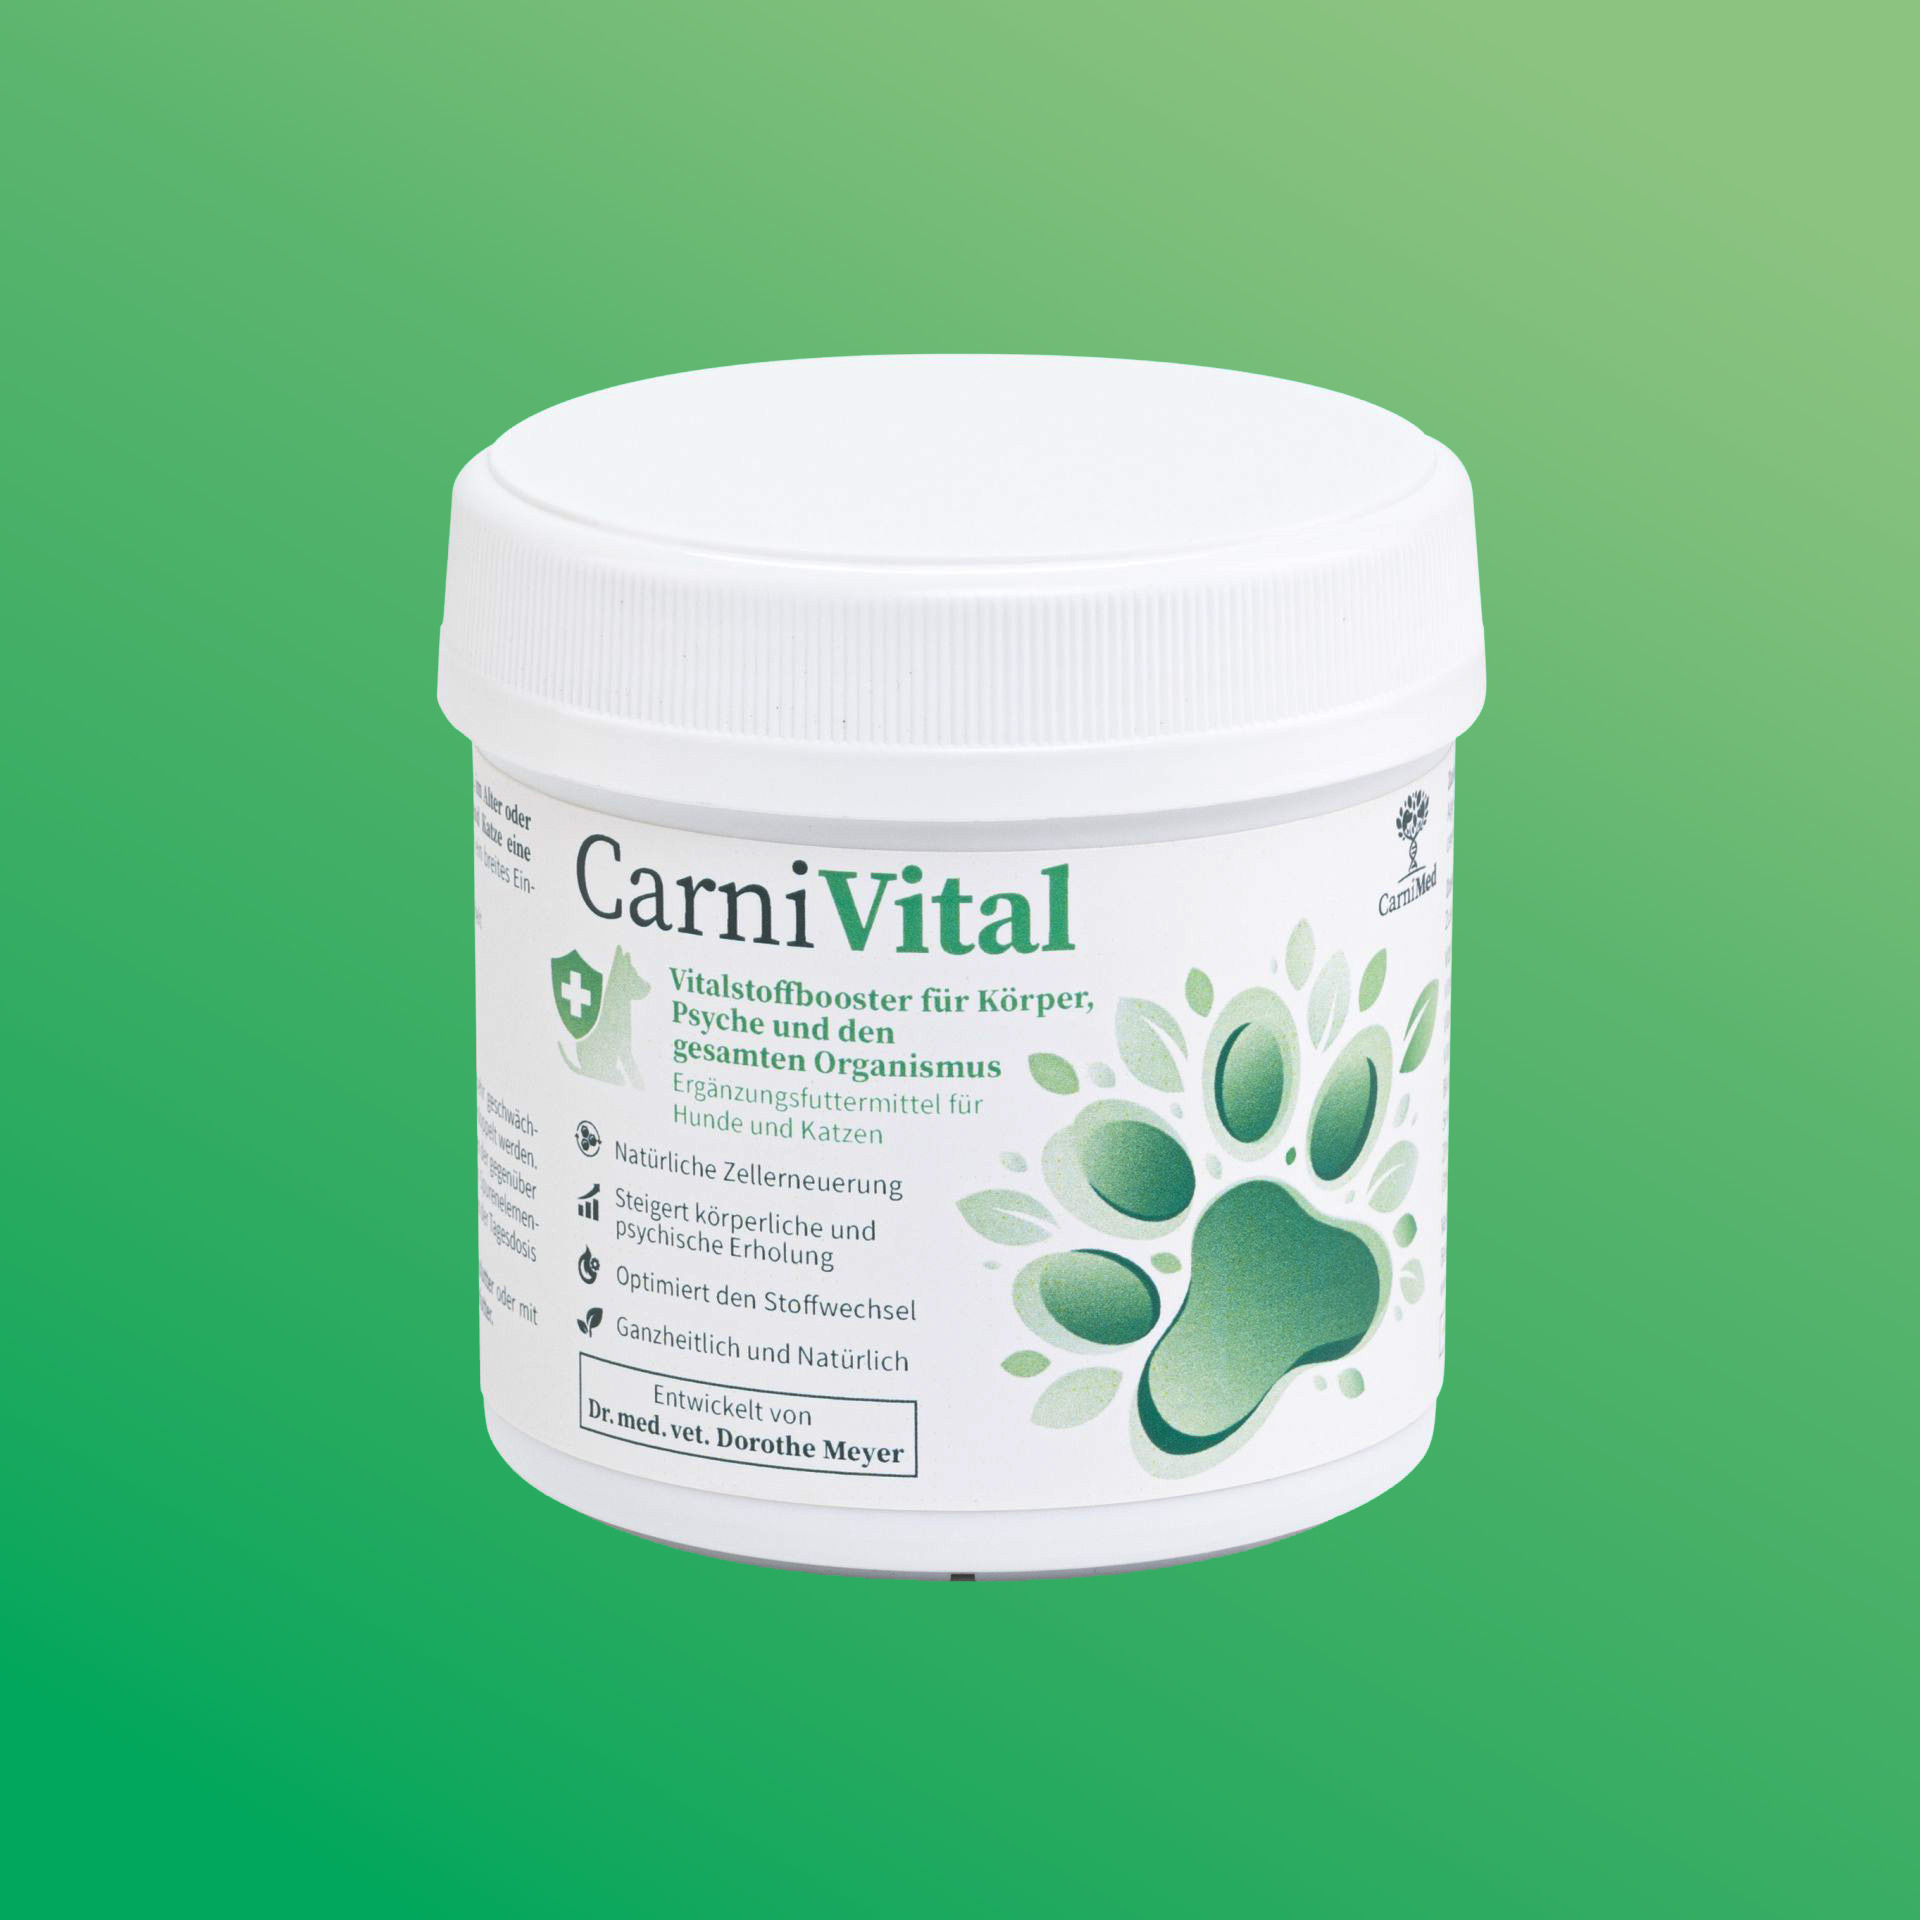 CarniVital - Vitalstoffbooster für Körper und Psyche